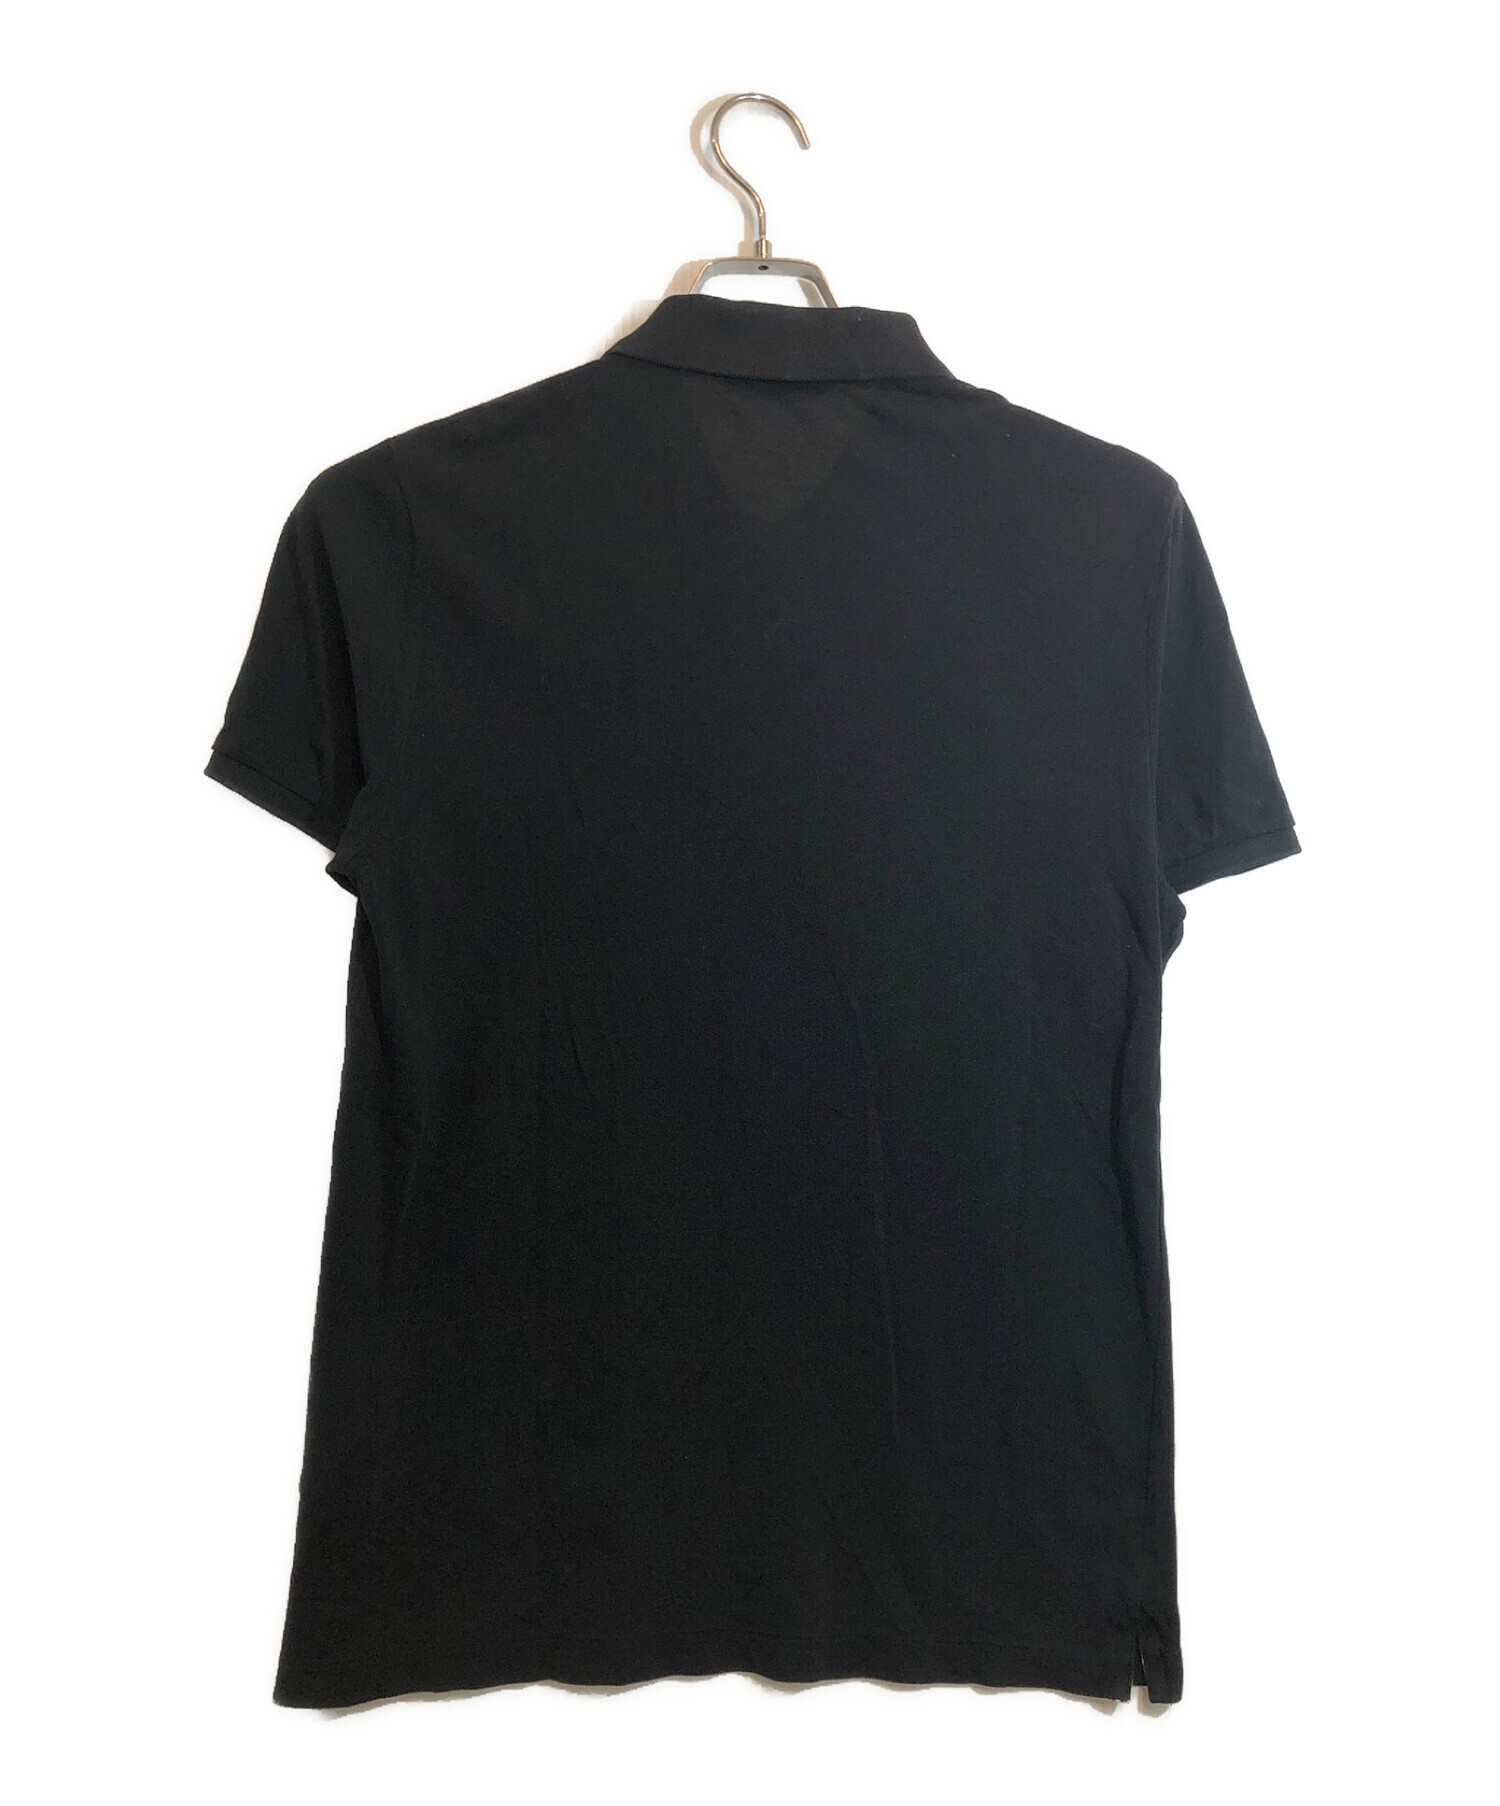 MONCLER (モンクレール) ロゴワッペンポロシャツ ブラック サイズ:S